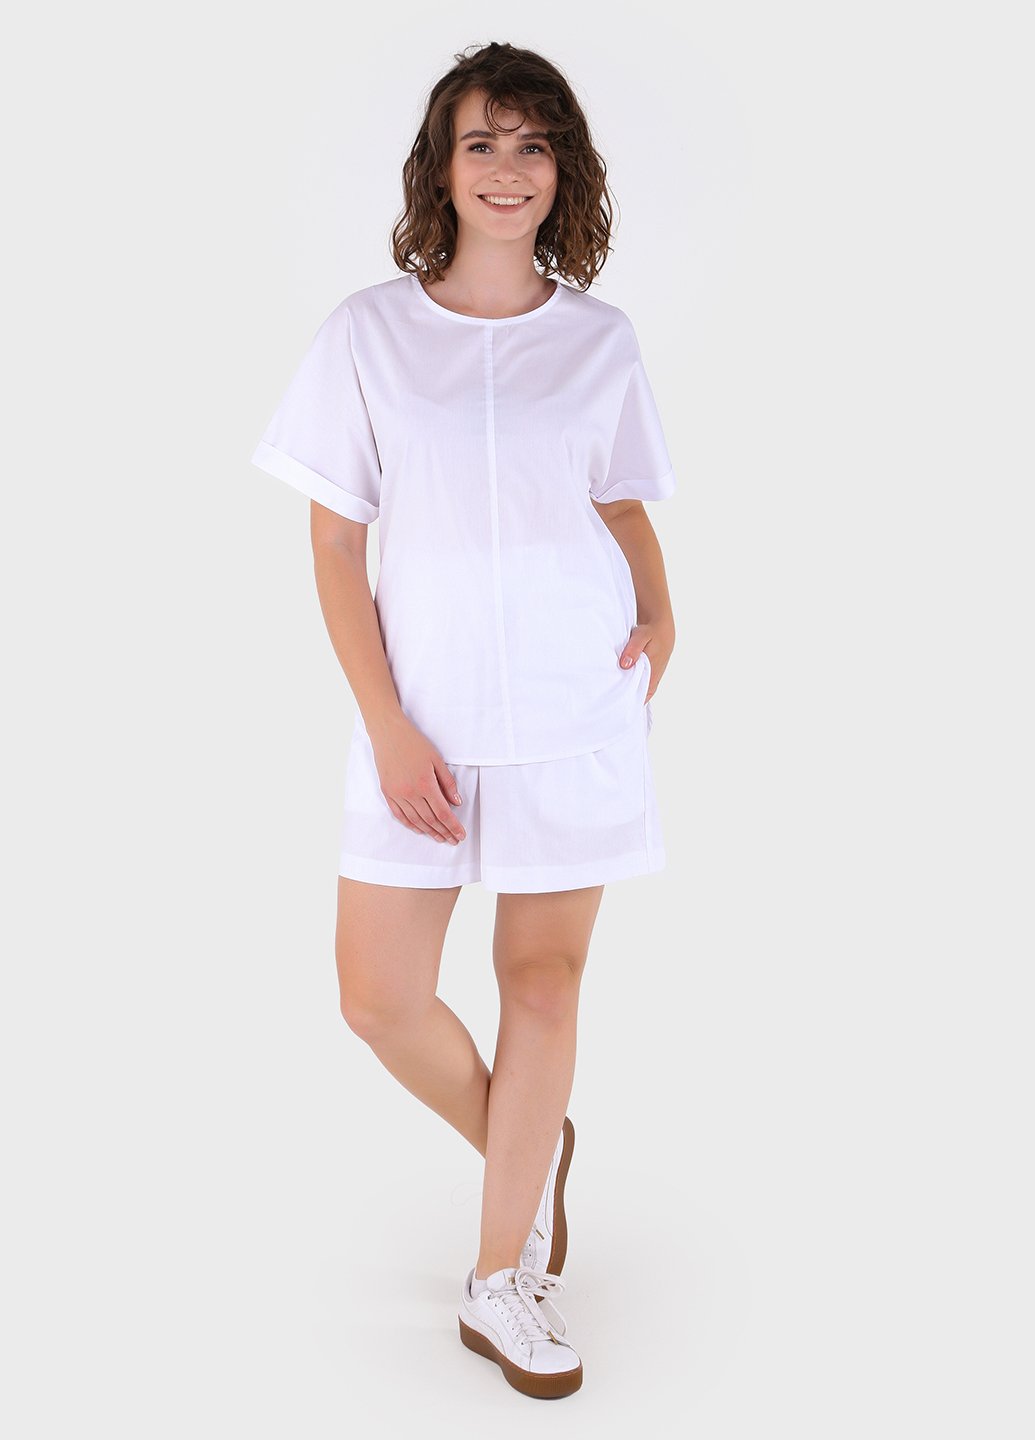 Купить Костюм женский из хлопка белого цвета Merlini Болонья 100000125, размер 42-44 в интернет-магазине